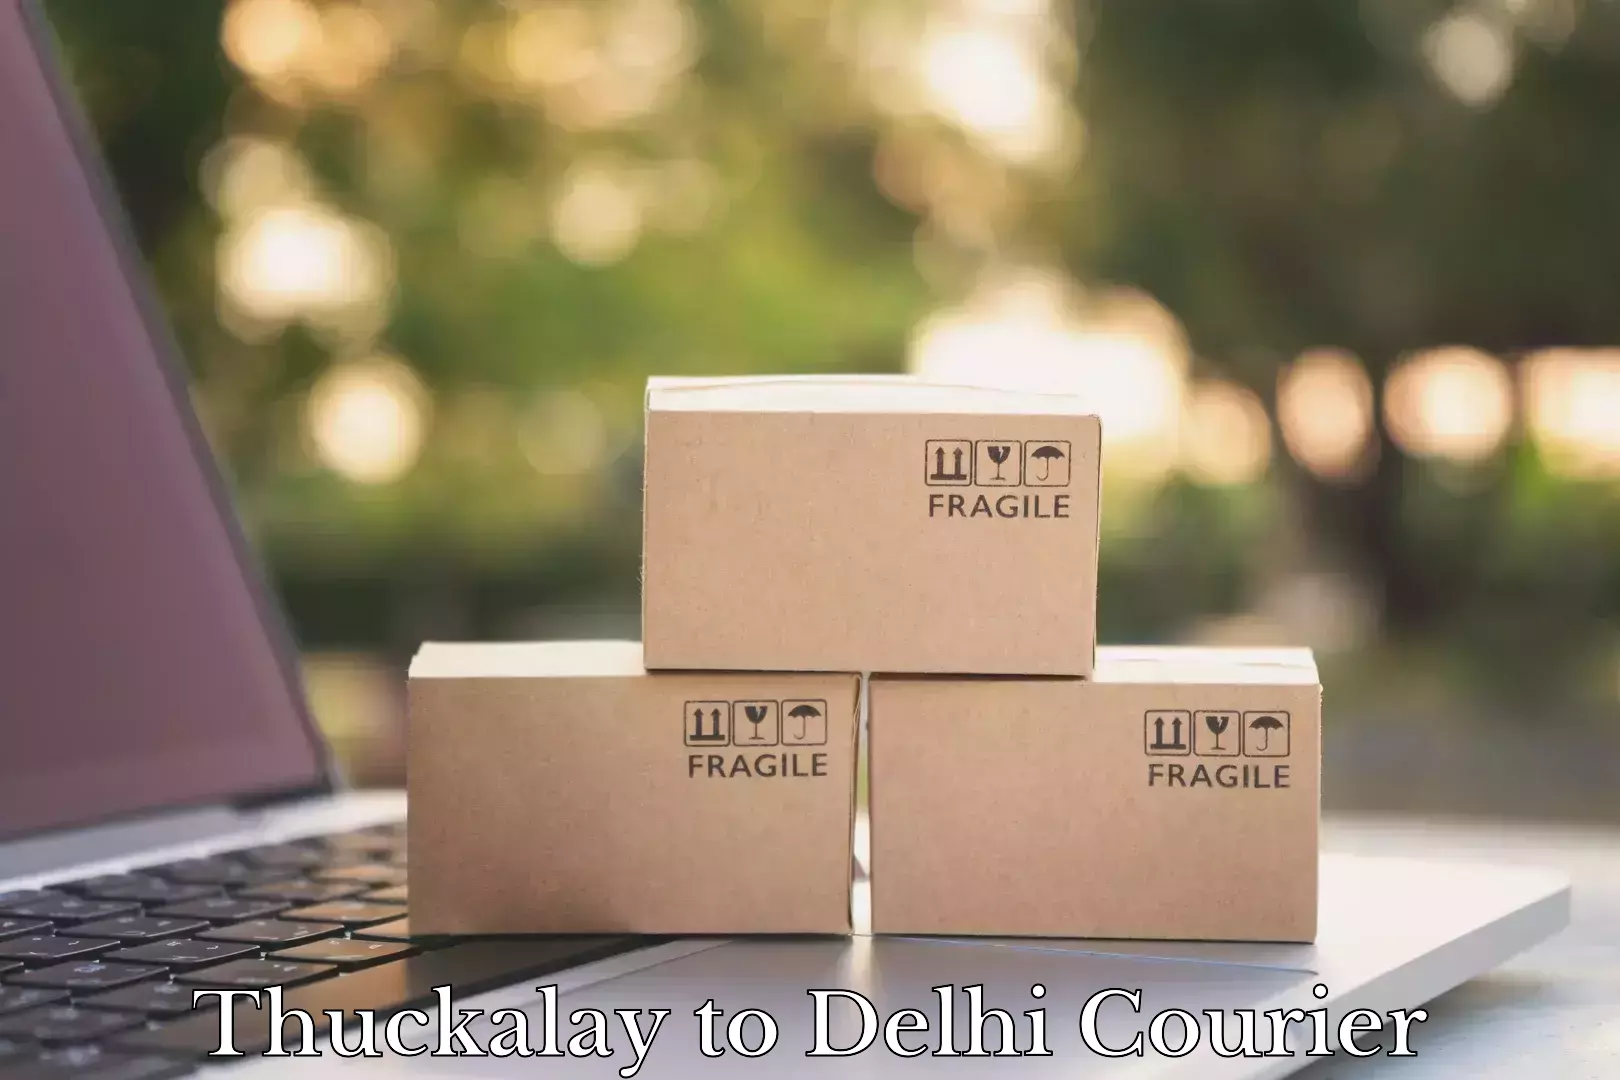 Affordable home movers Thuckalay to Jamia Millia Islamia New Delhi